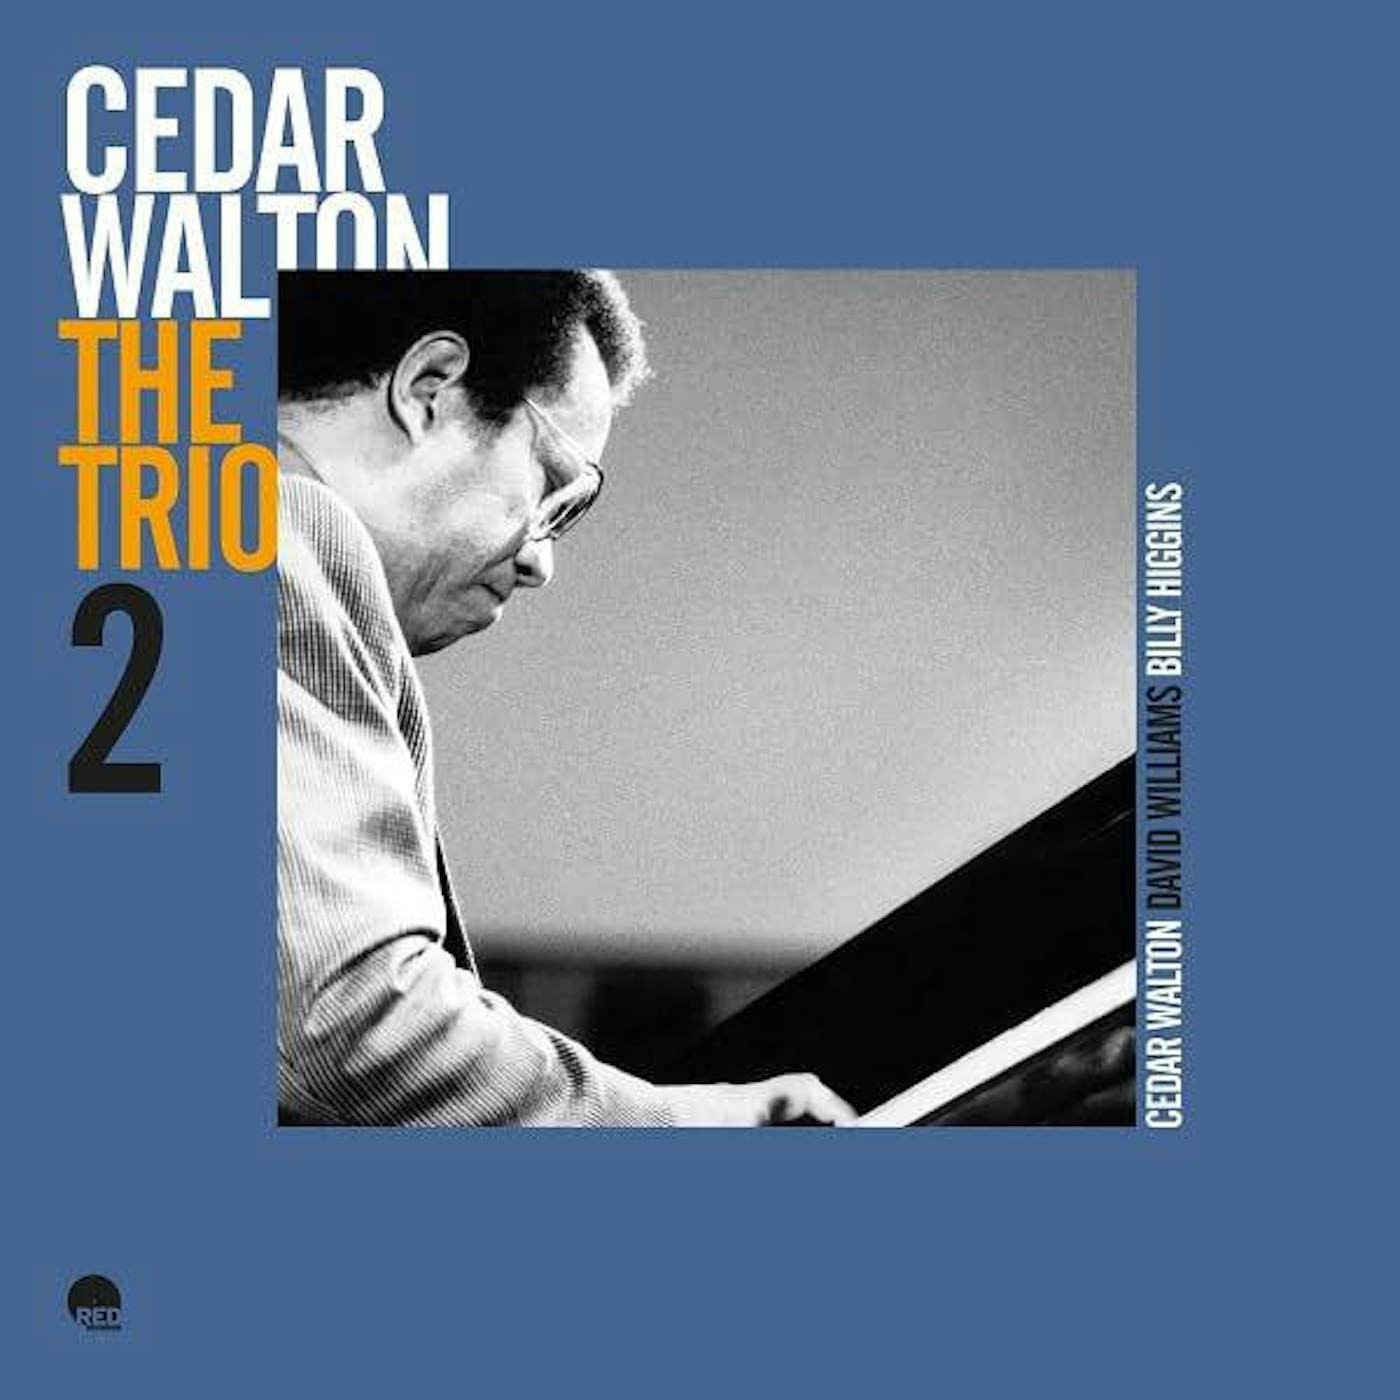 Cedar Walton Trio 2 Vinyl Record